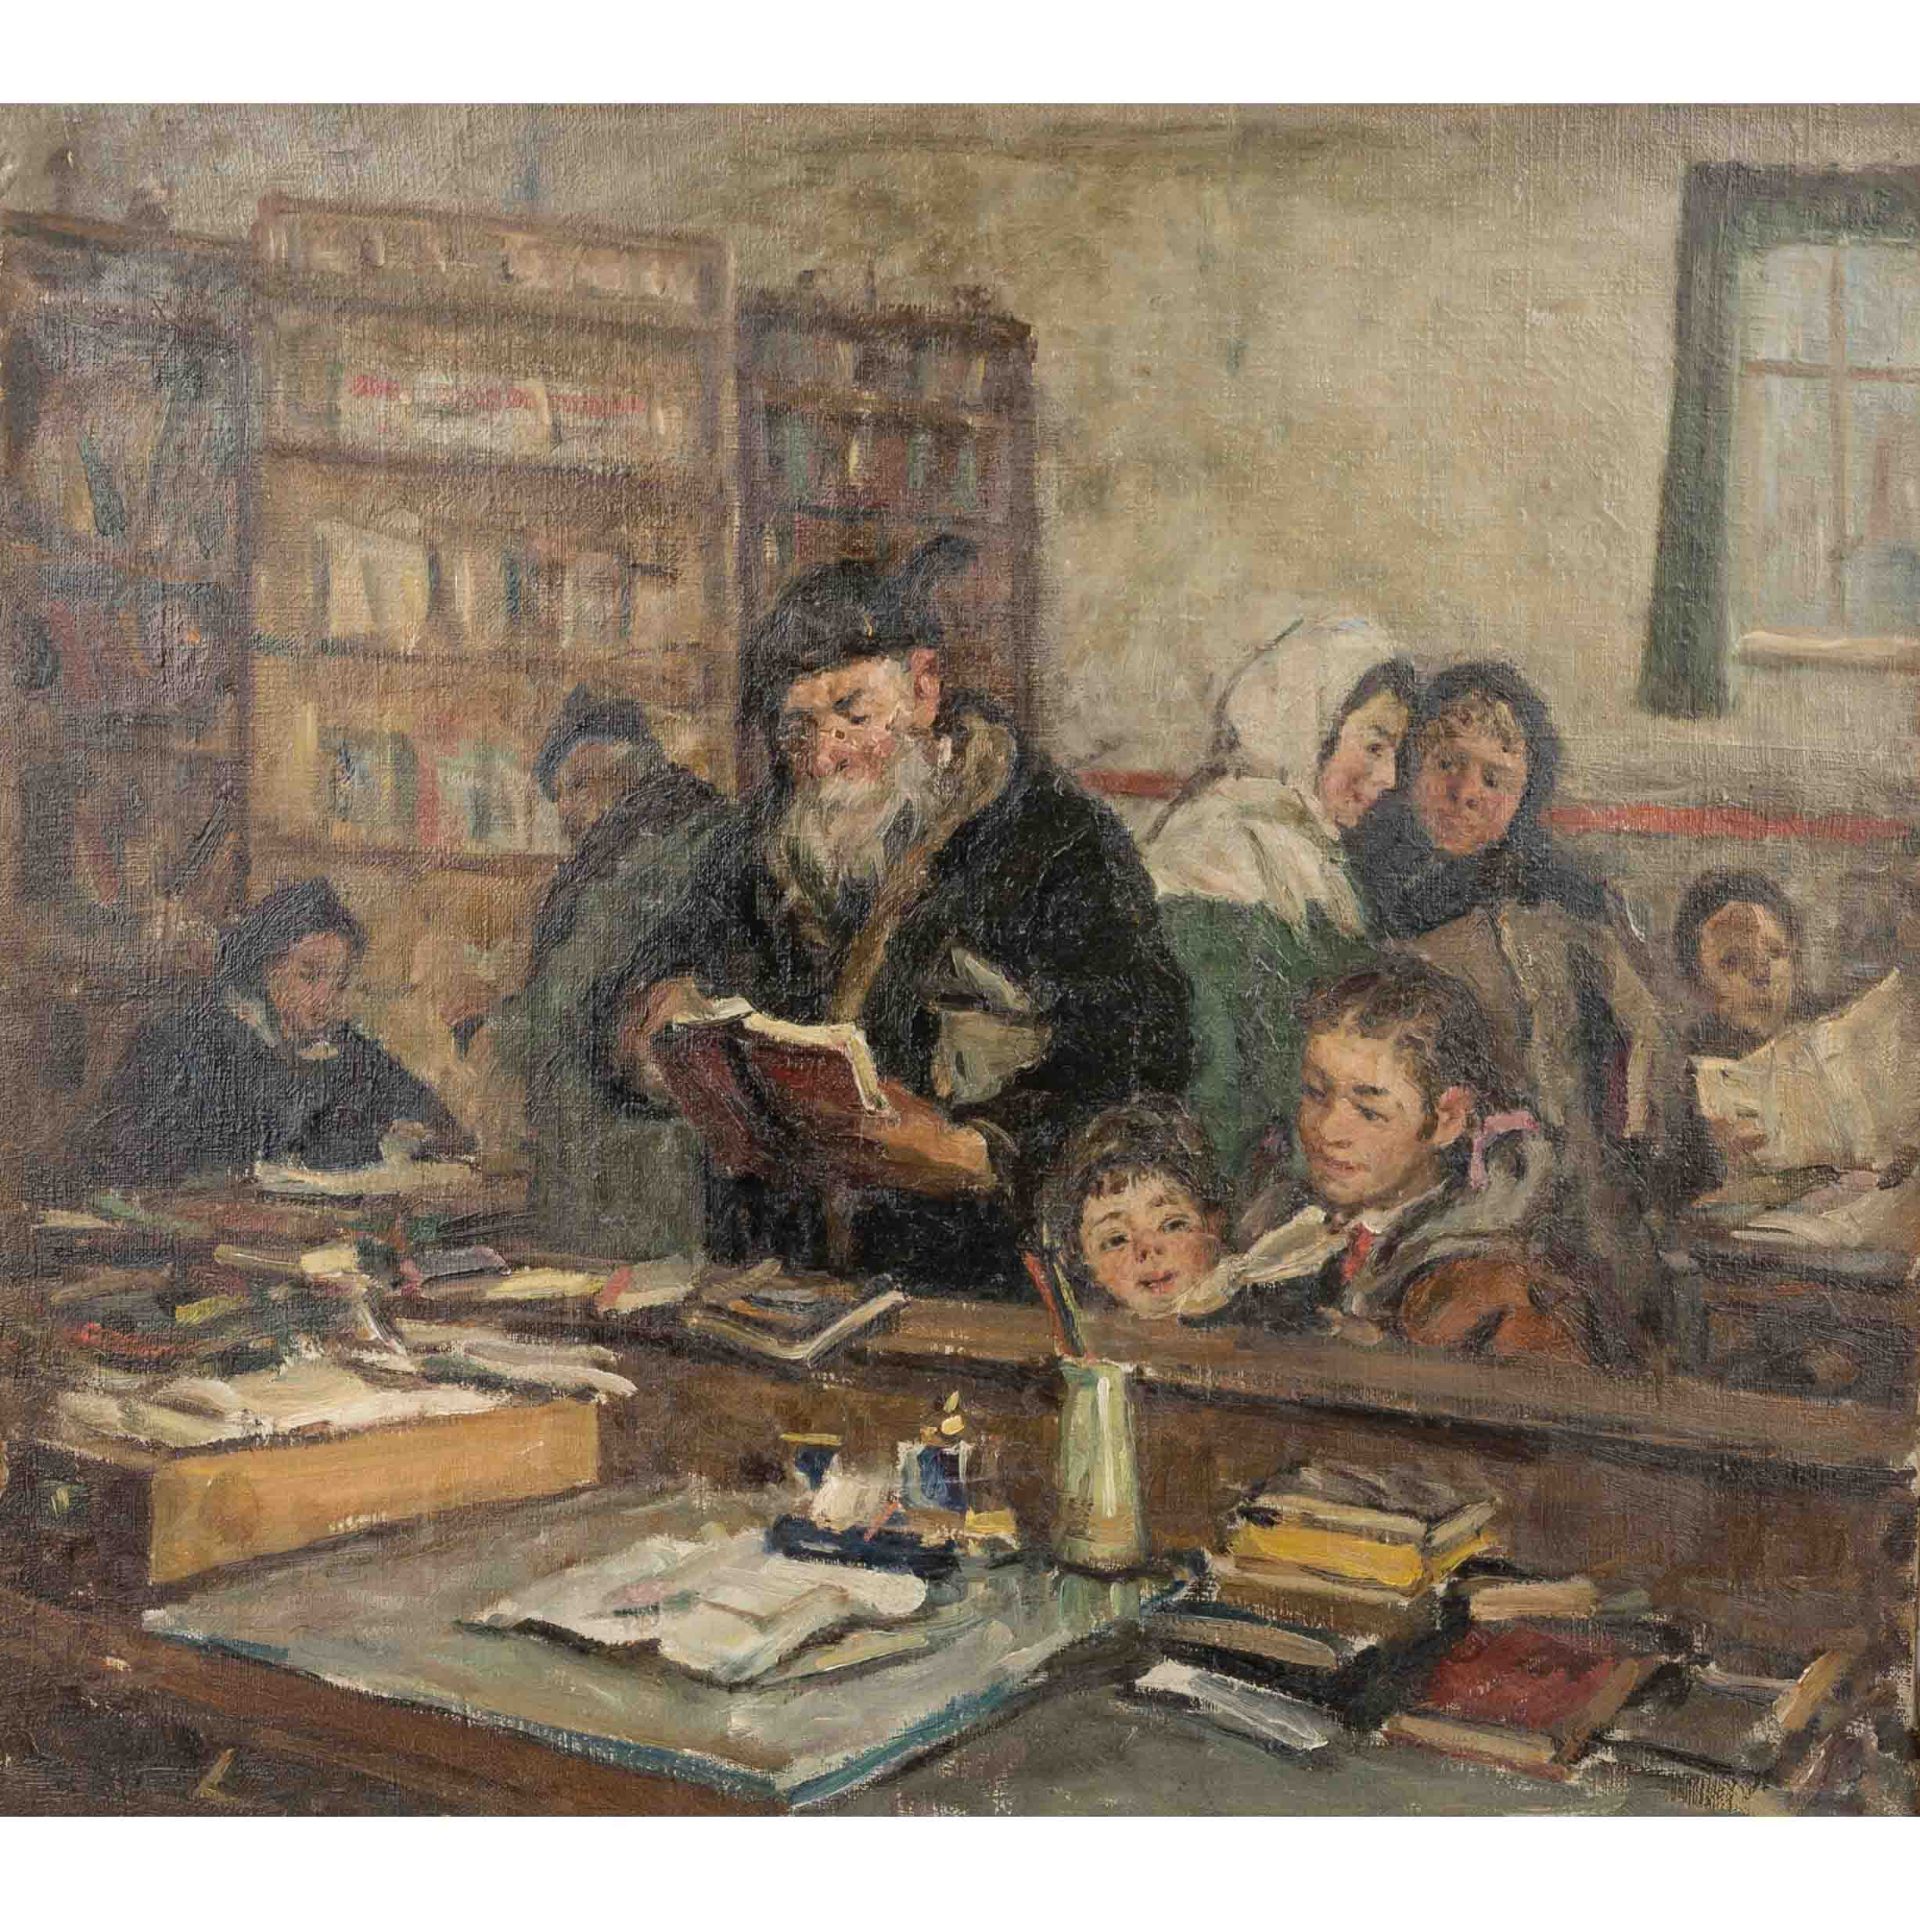 HARTCHENKO, BORIS (auch Kharchenko, 1927-1985, russ. Künstler), "In der Dorfbibliothek",<br